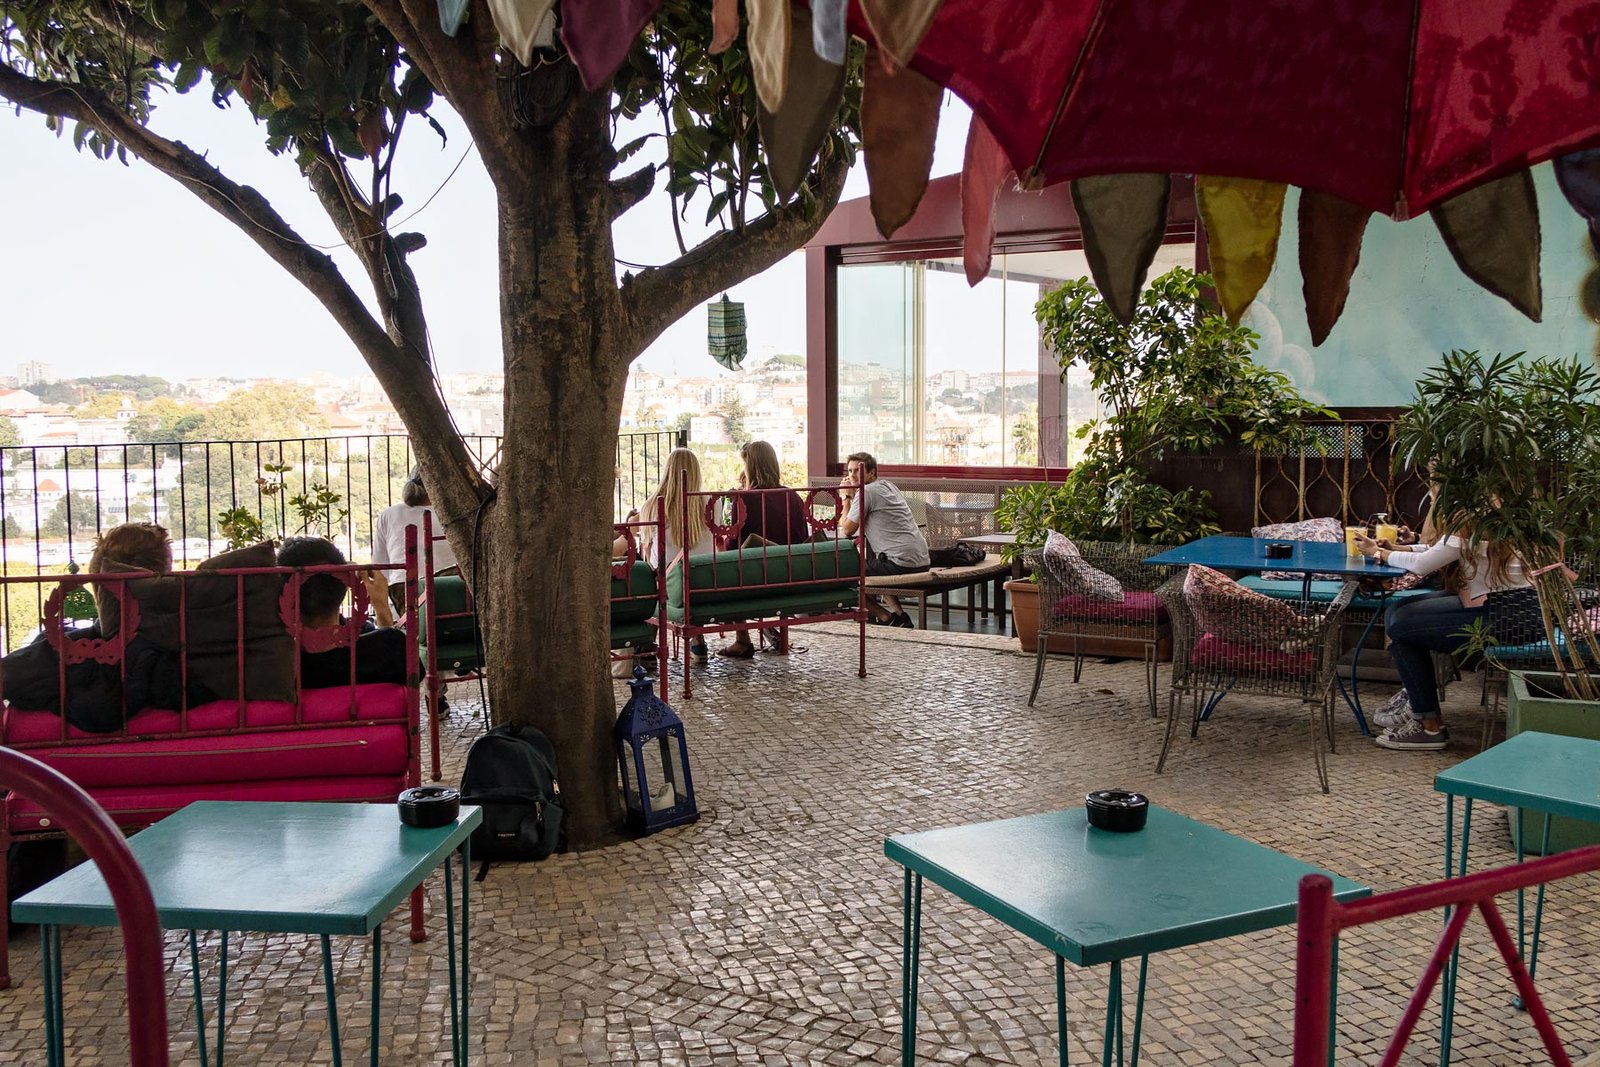 Tips om lekker te eten in Lissabon met de leukste restaurants. Lost In tuin met uitzicht over Lissabon.